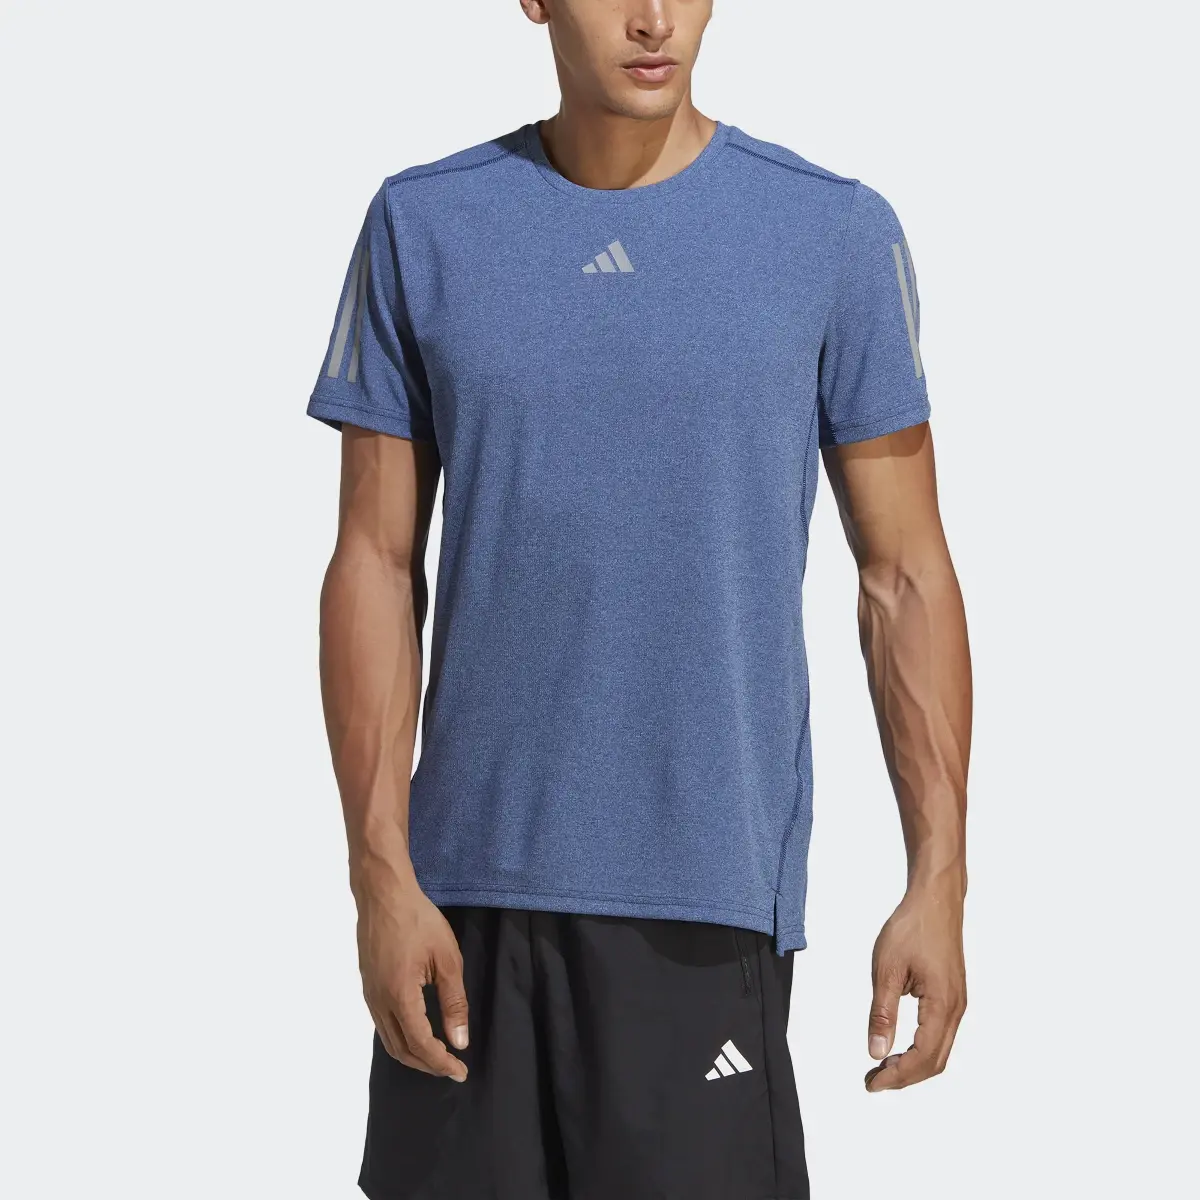 Adidas Camiseta Own the Run Heather. 1